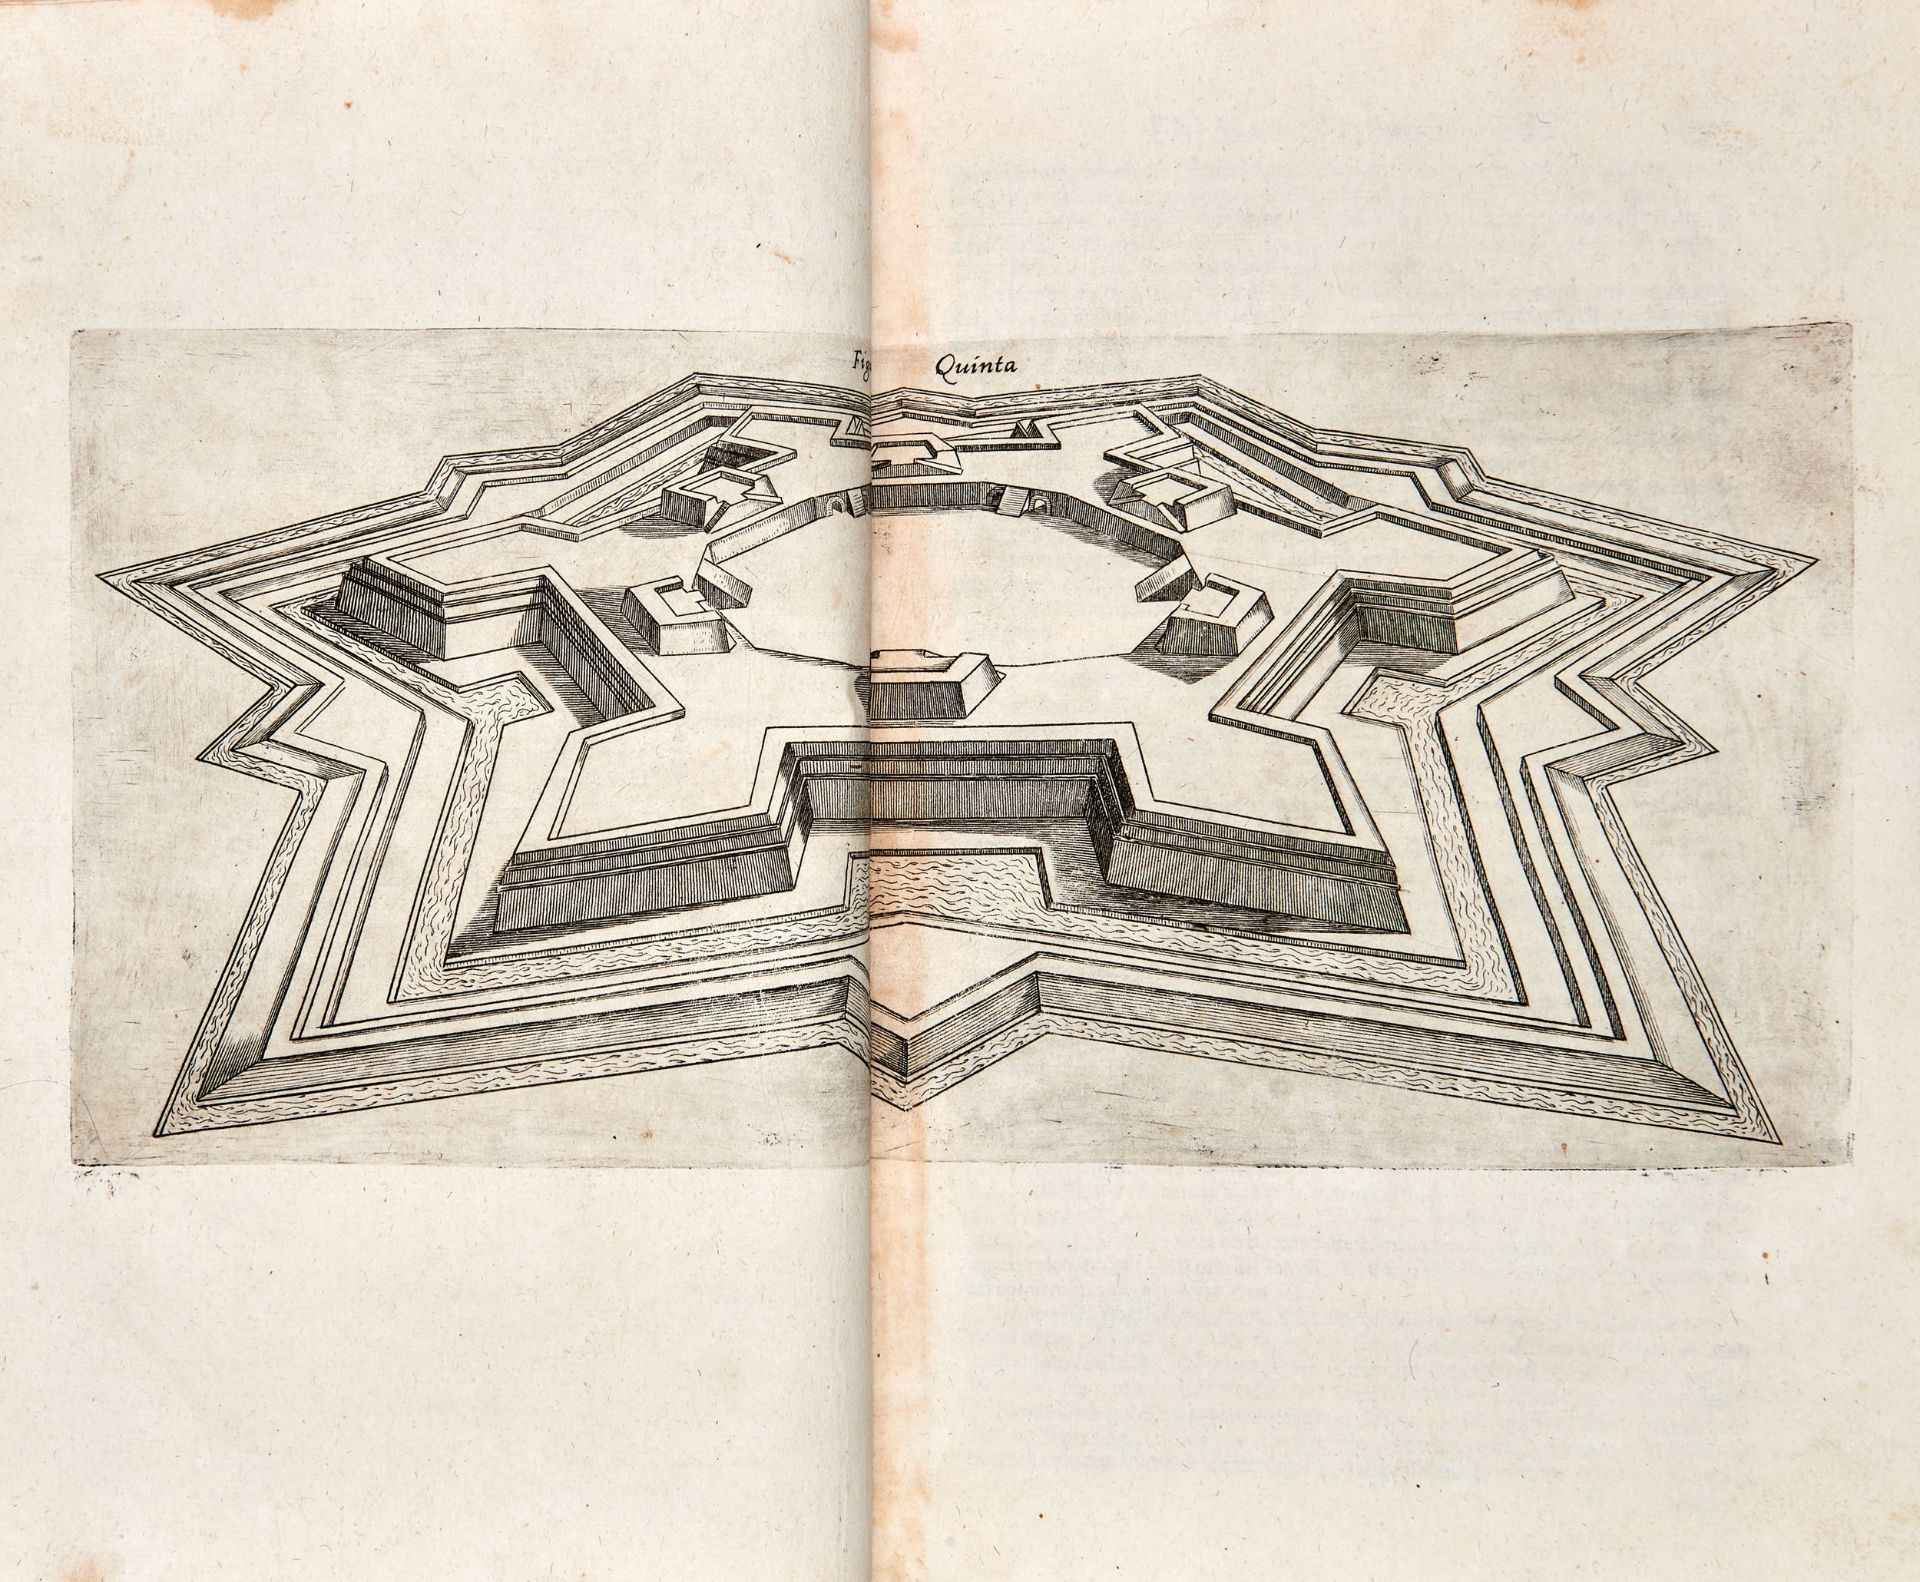 [MILITARIA] SARDI Pietro (16th century). Corno Dogale della Militare Architettura. Venice: Giunti,